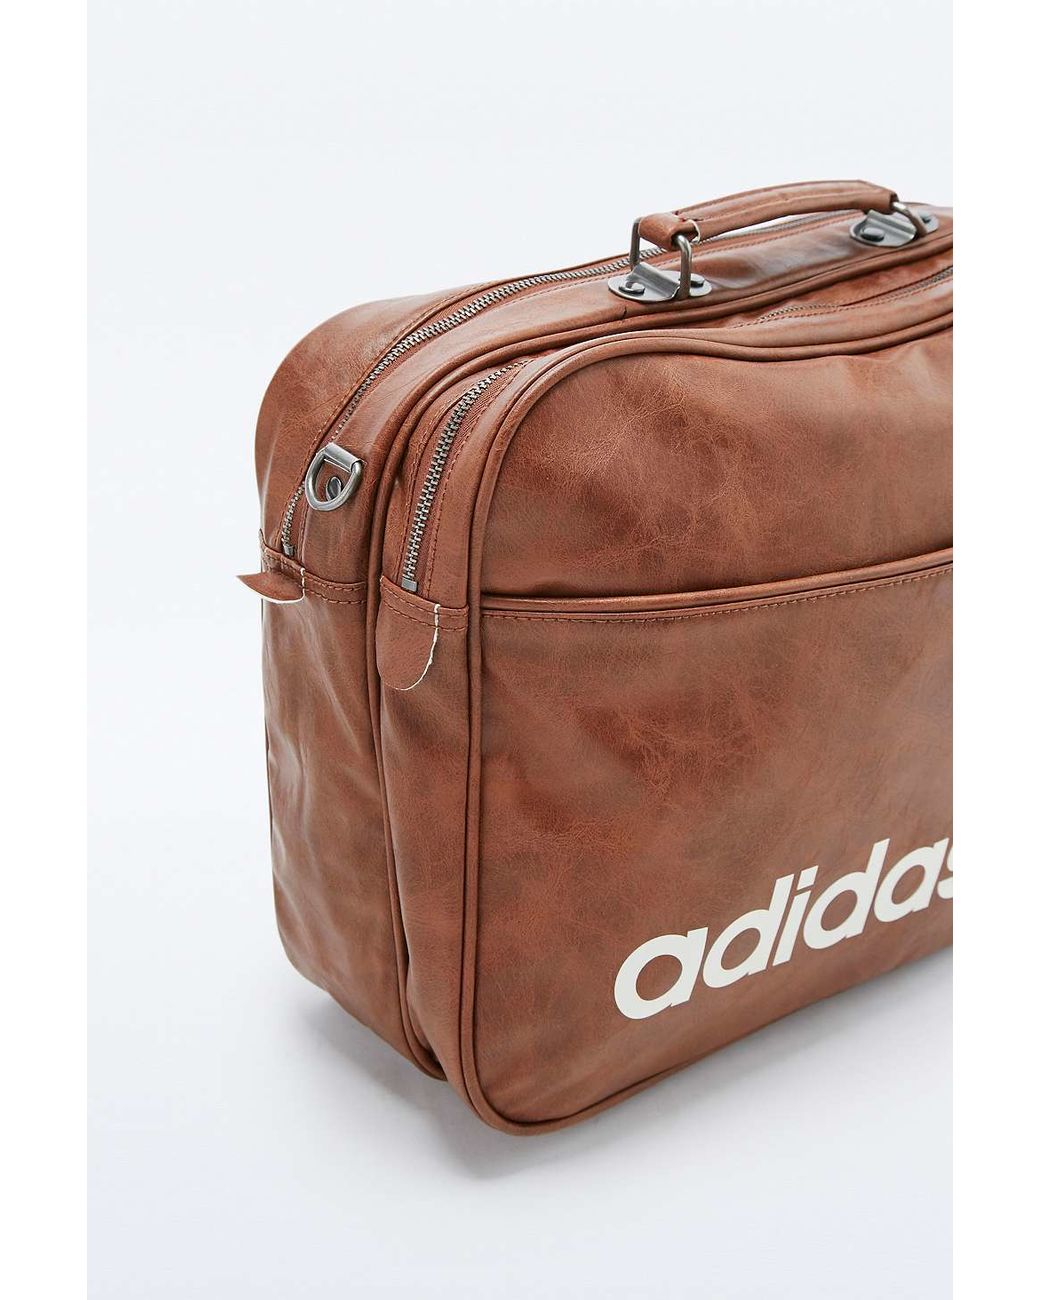 adidas Originals Brown Vintage Airline Bag for Men | Lyst UK